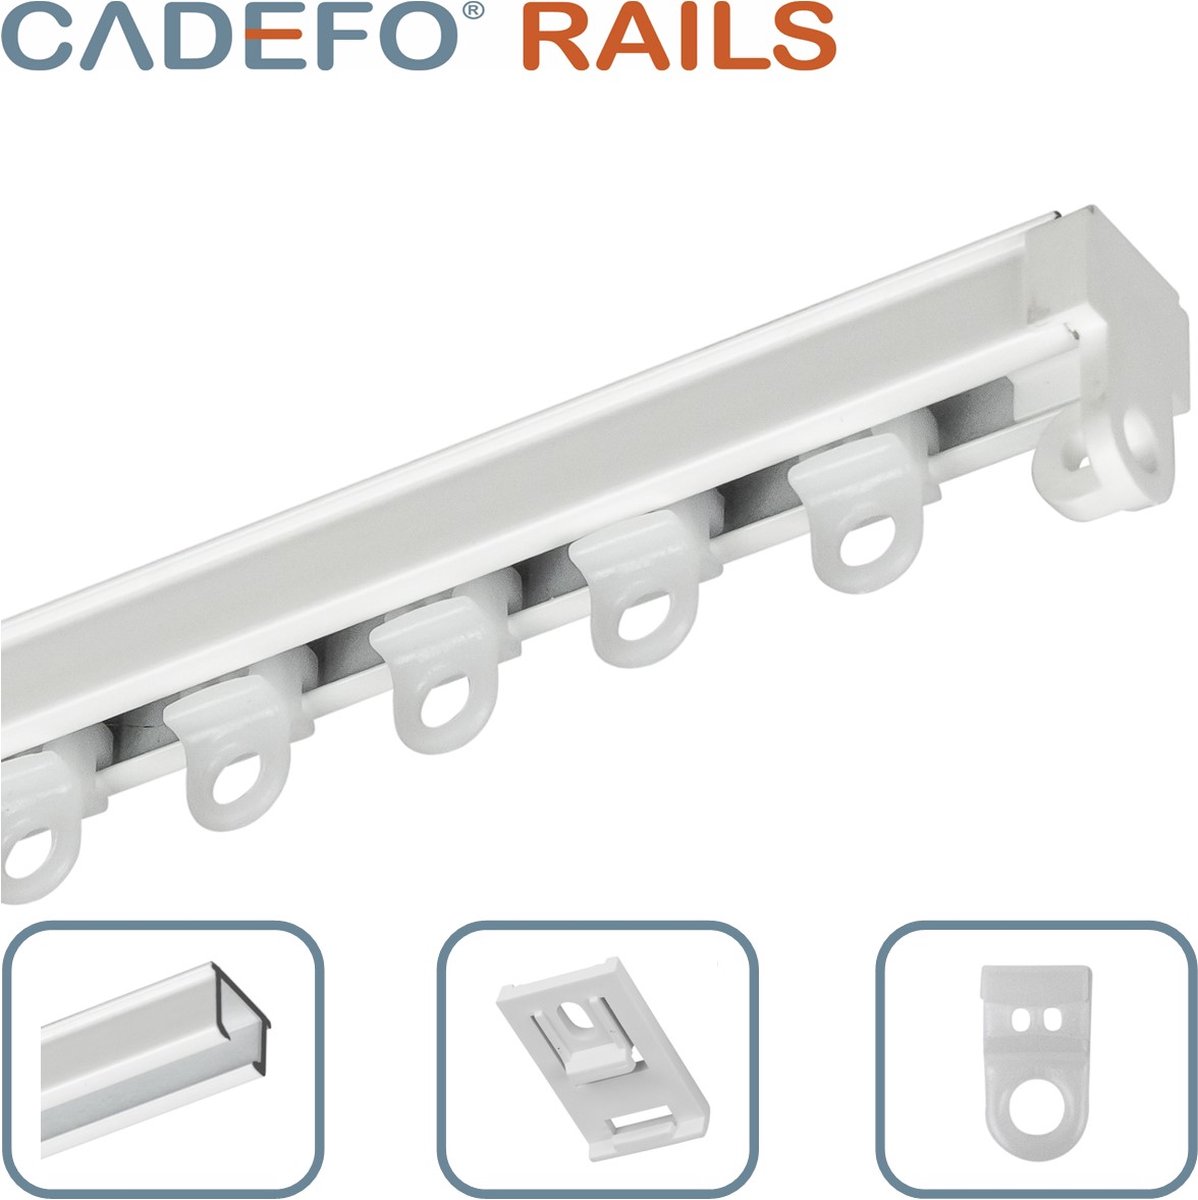 CADEFO RAILS (401 - 450 cm) Gordijnrails - Compleet op maat! - UIT 1 STUK - Leverbaar tot 6 meter - Plafondbevestiging - Lengte 401 cm